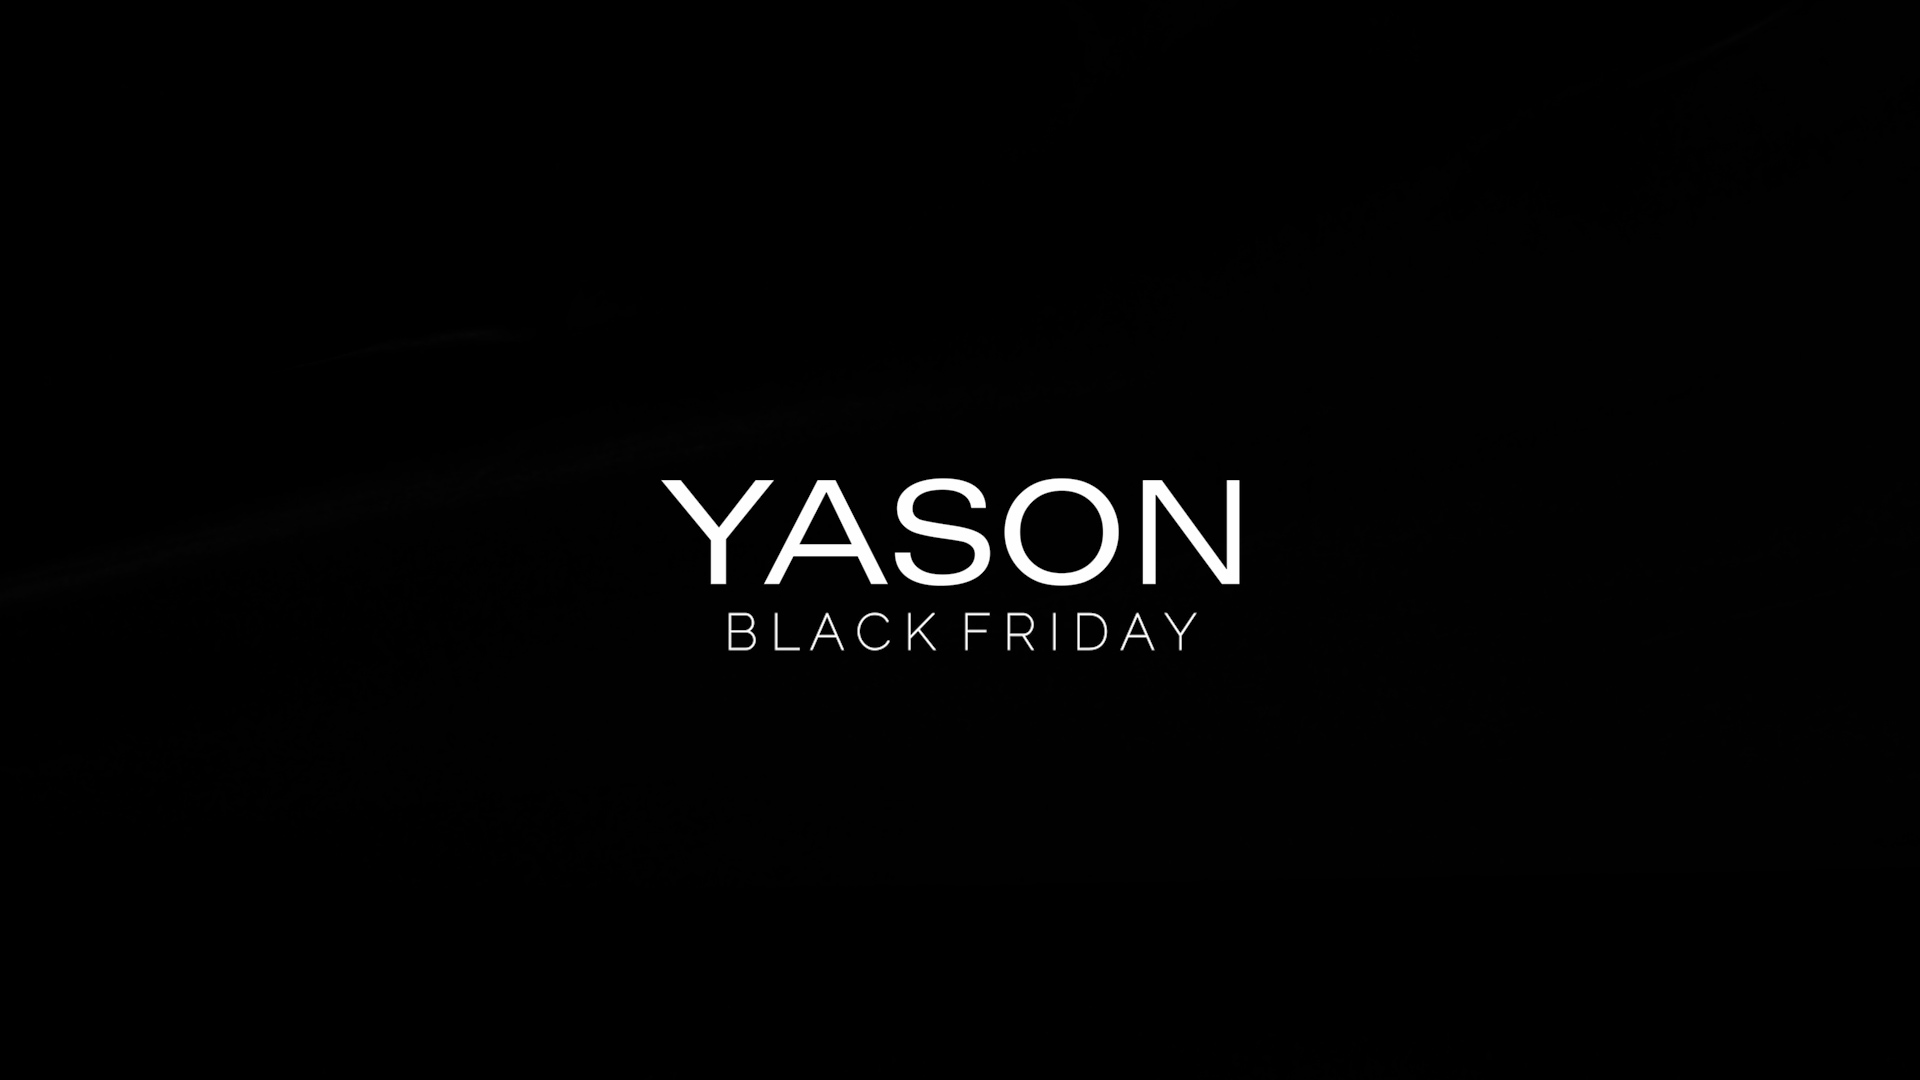 yason black friday